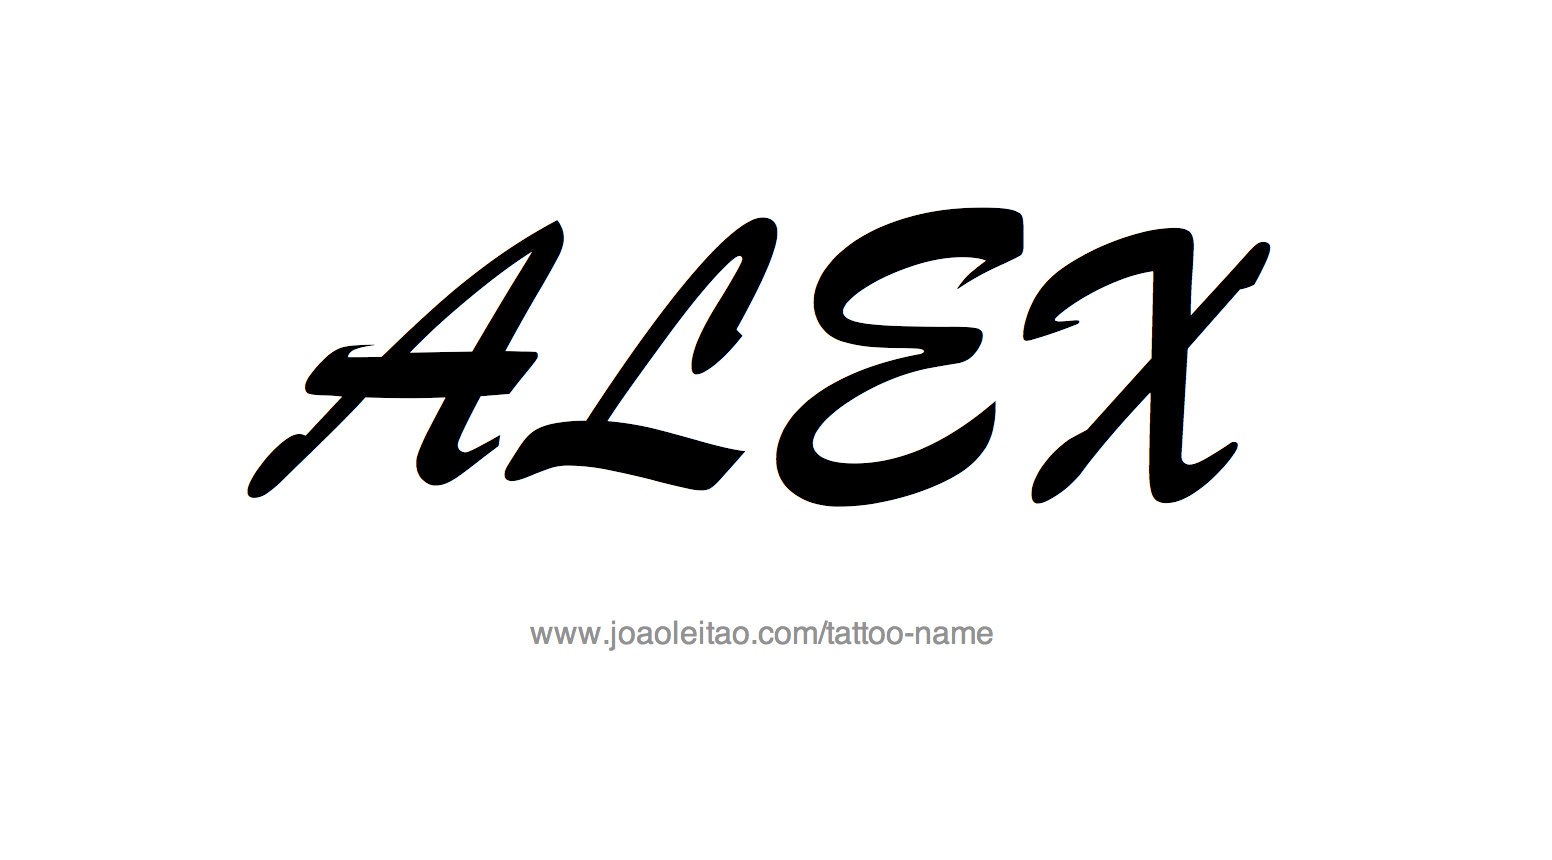 Что означает имя алексей, его происхождение и влияние на характер и судьбу человека